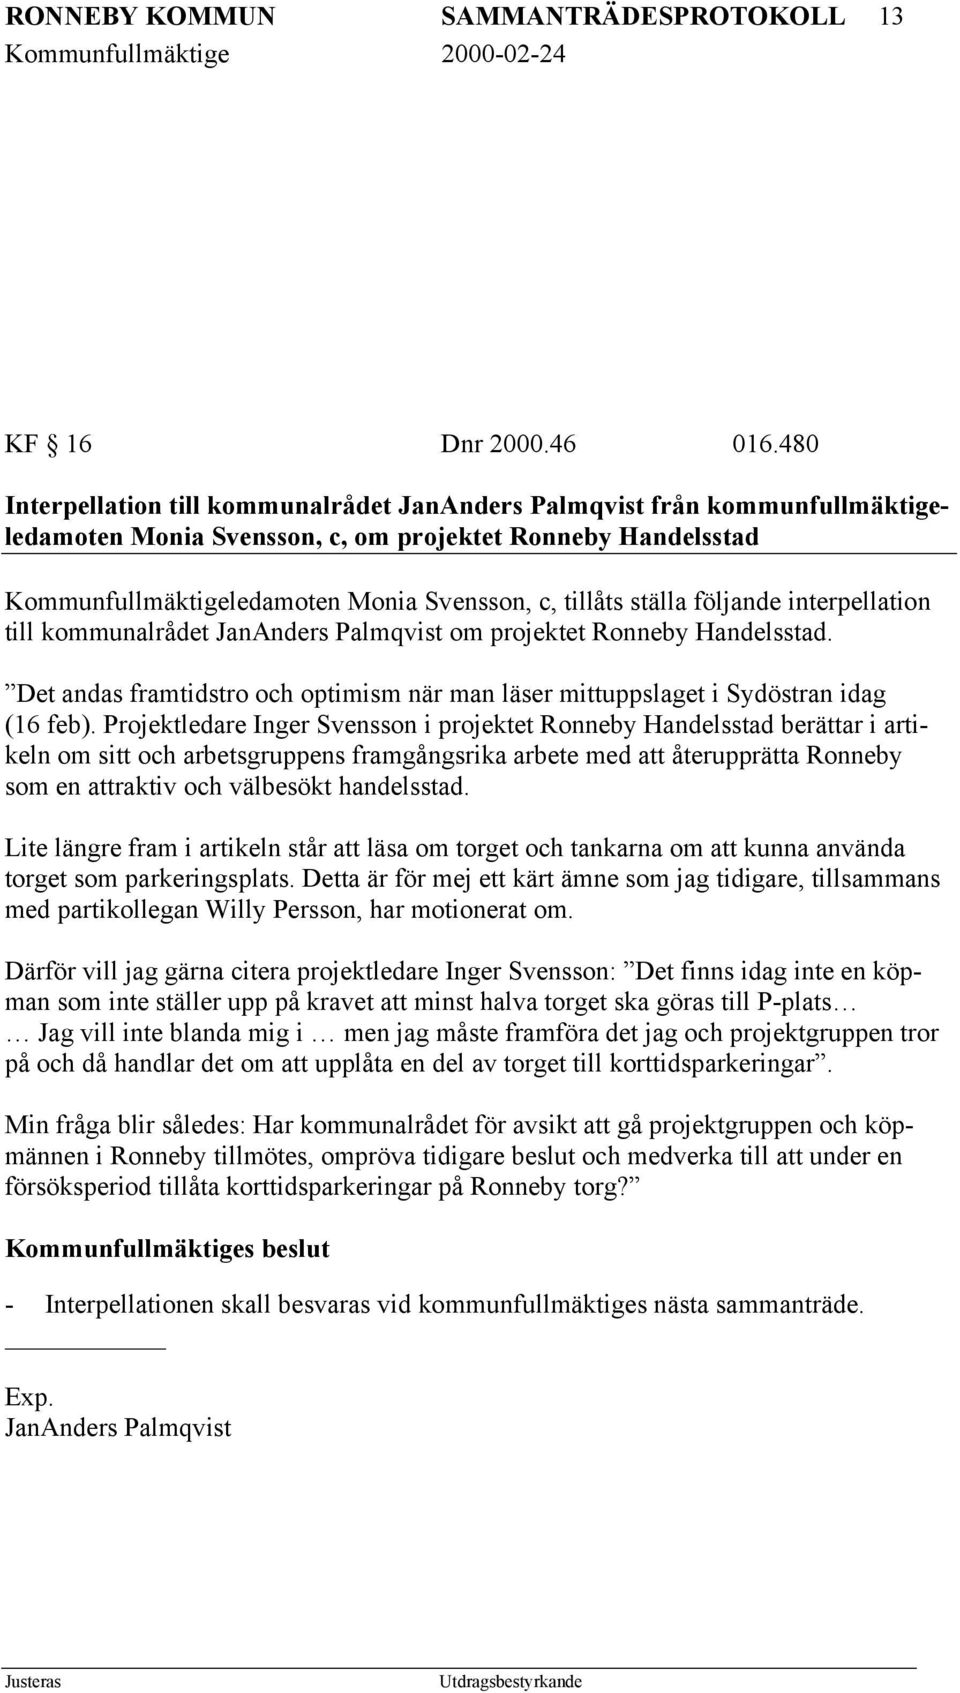 ställa följande interpellation till kommunalrådet JanAnders Palmqvist om projektet Ronneby Handelsstad. Det andas framtidstro och optimism när man läser mittuppslaget i Sydöstran idag (16 feb).